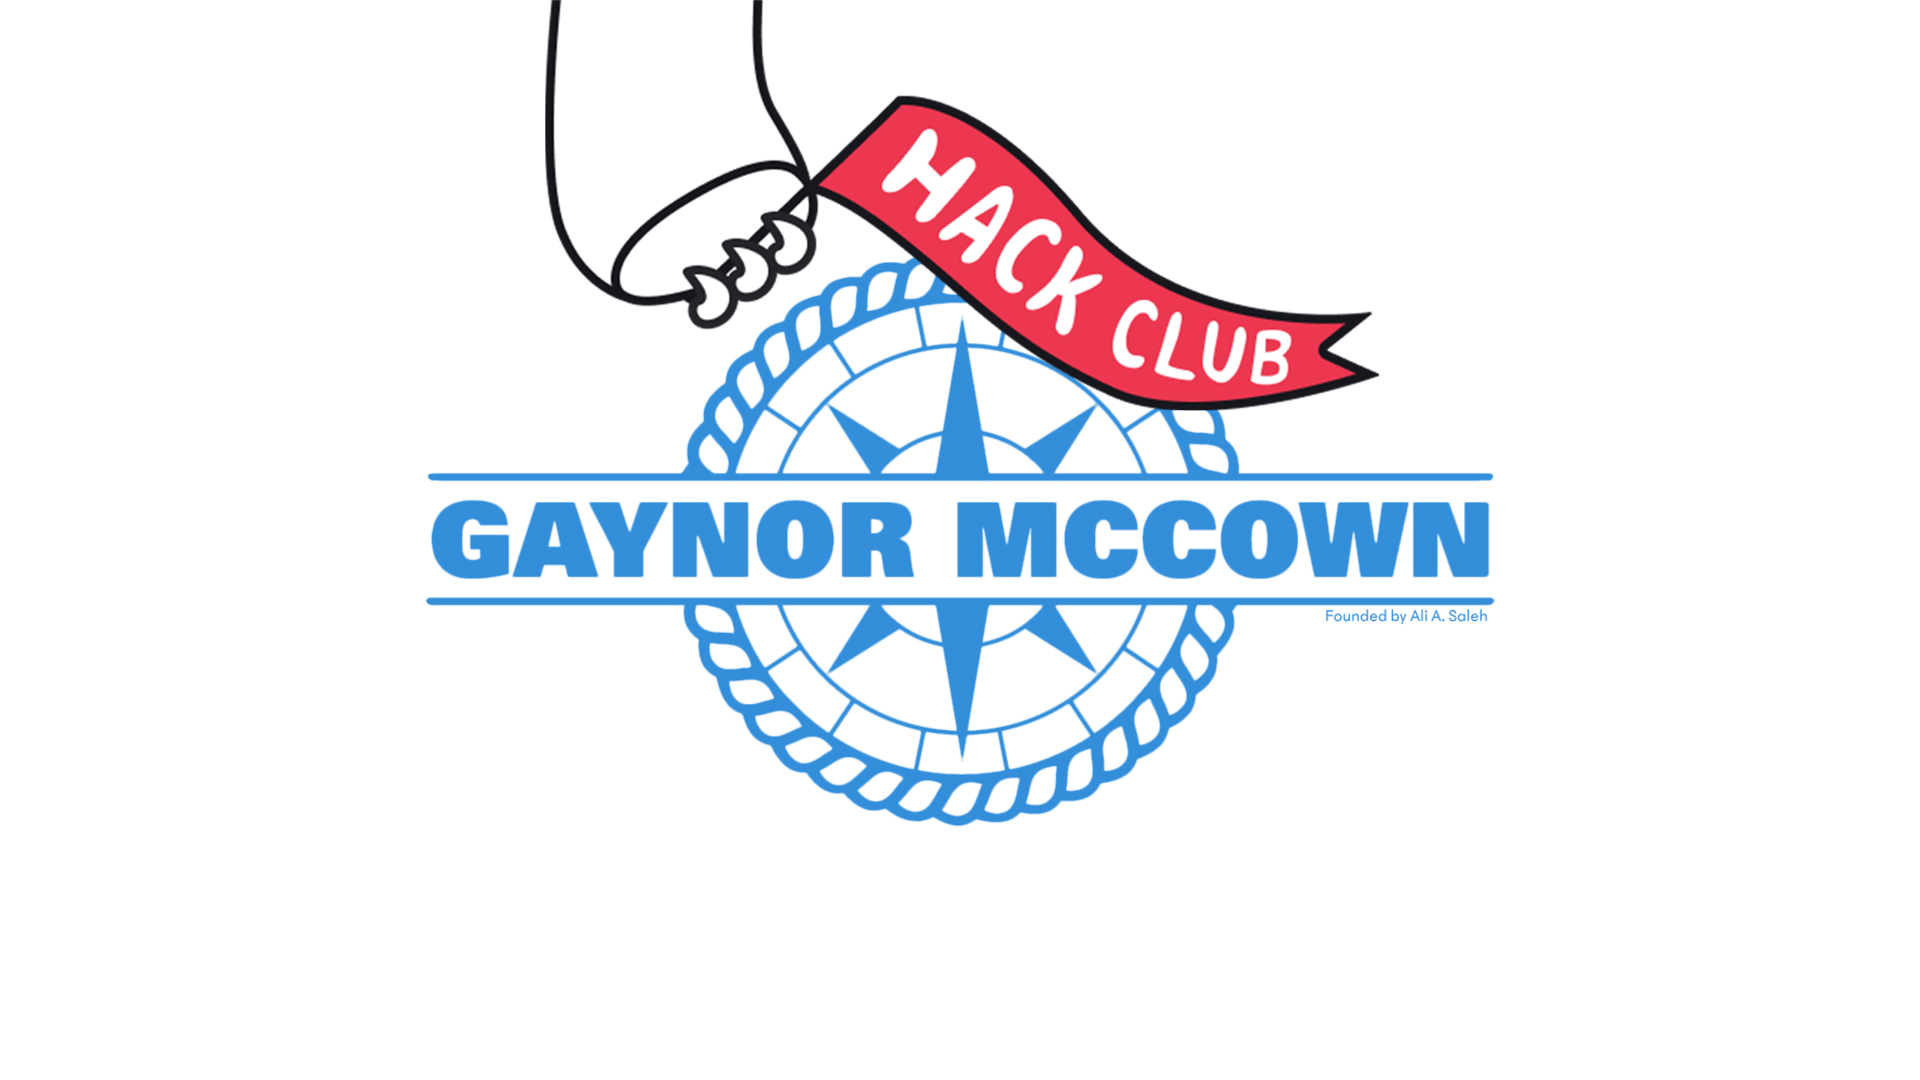 Gaynor McCown Hack Club